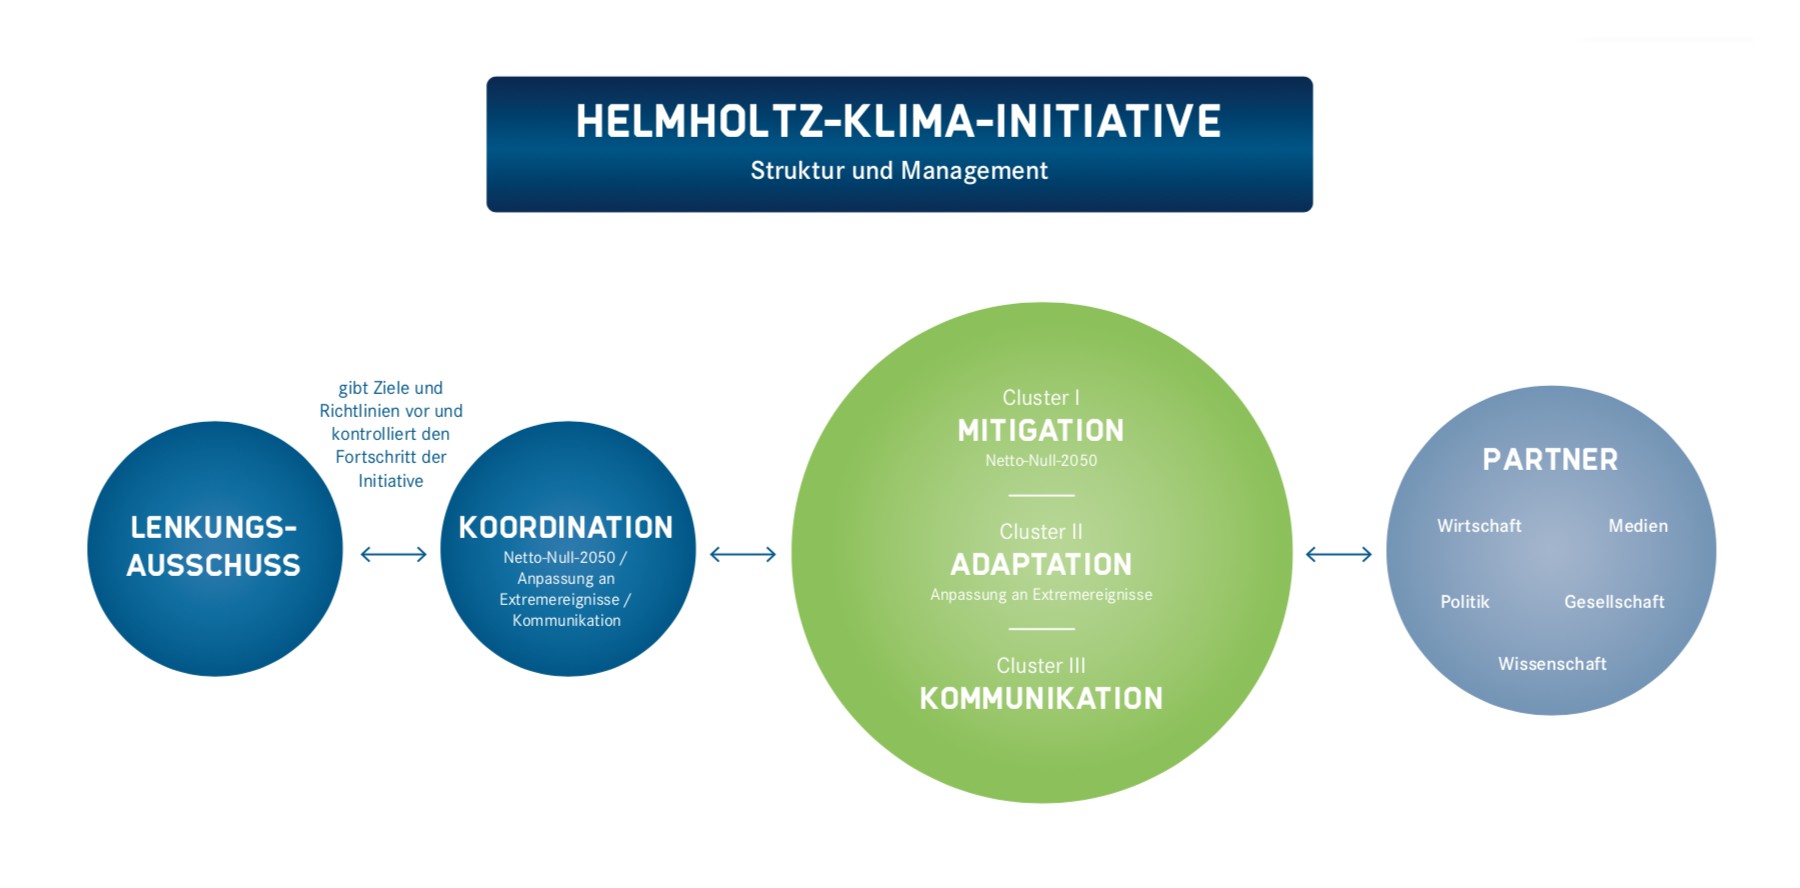 Organigramm: Helmholtz-Klima-Initiative: Struktur und Management